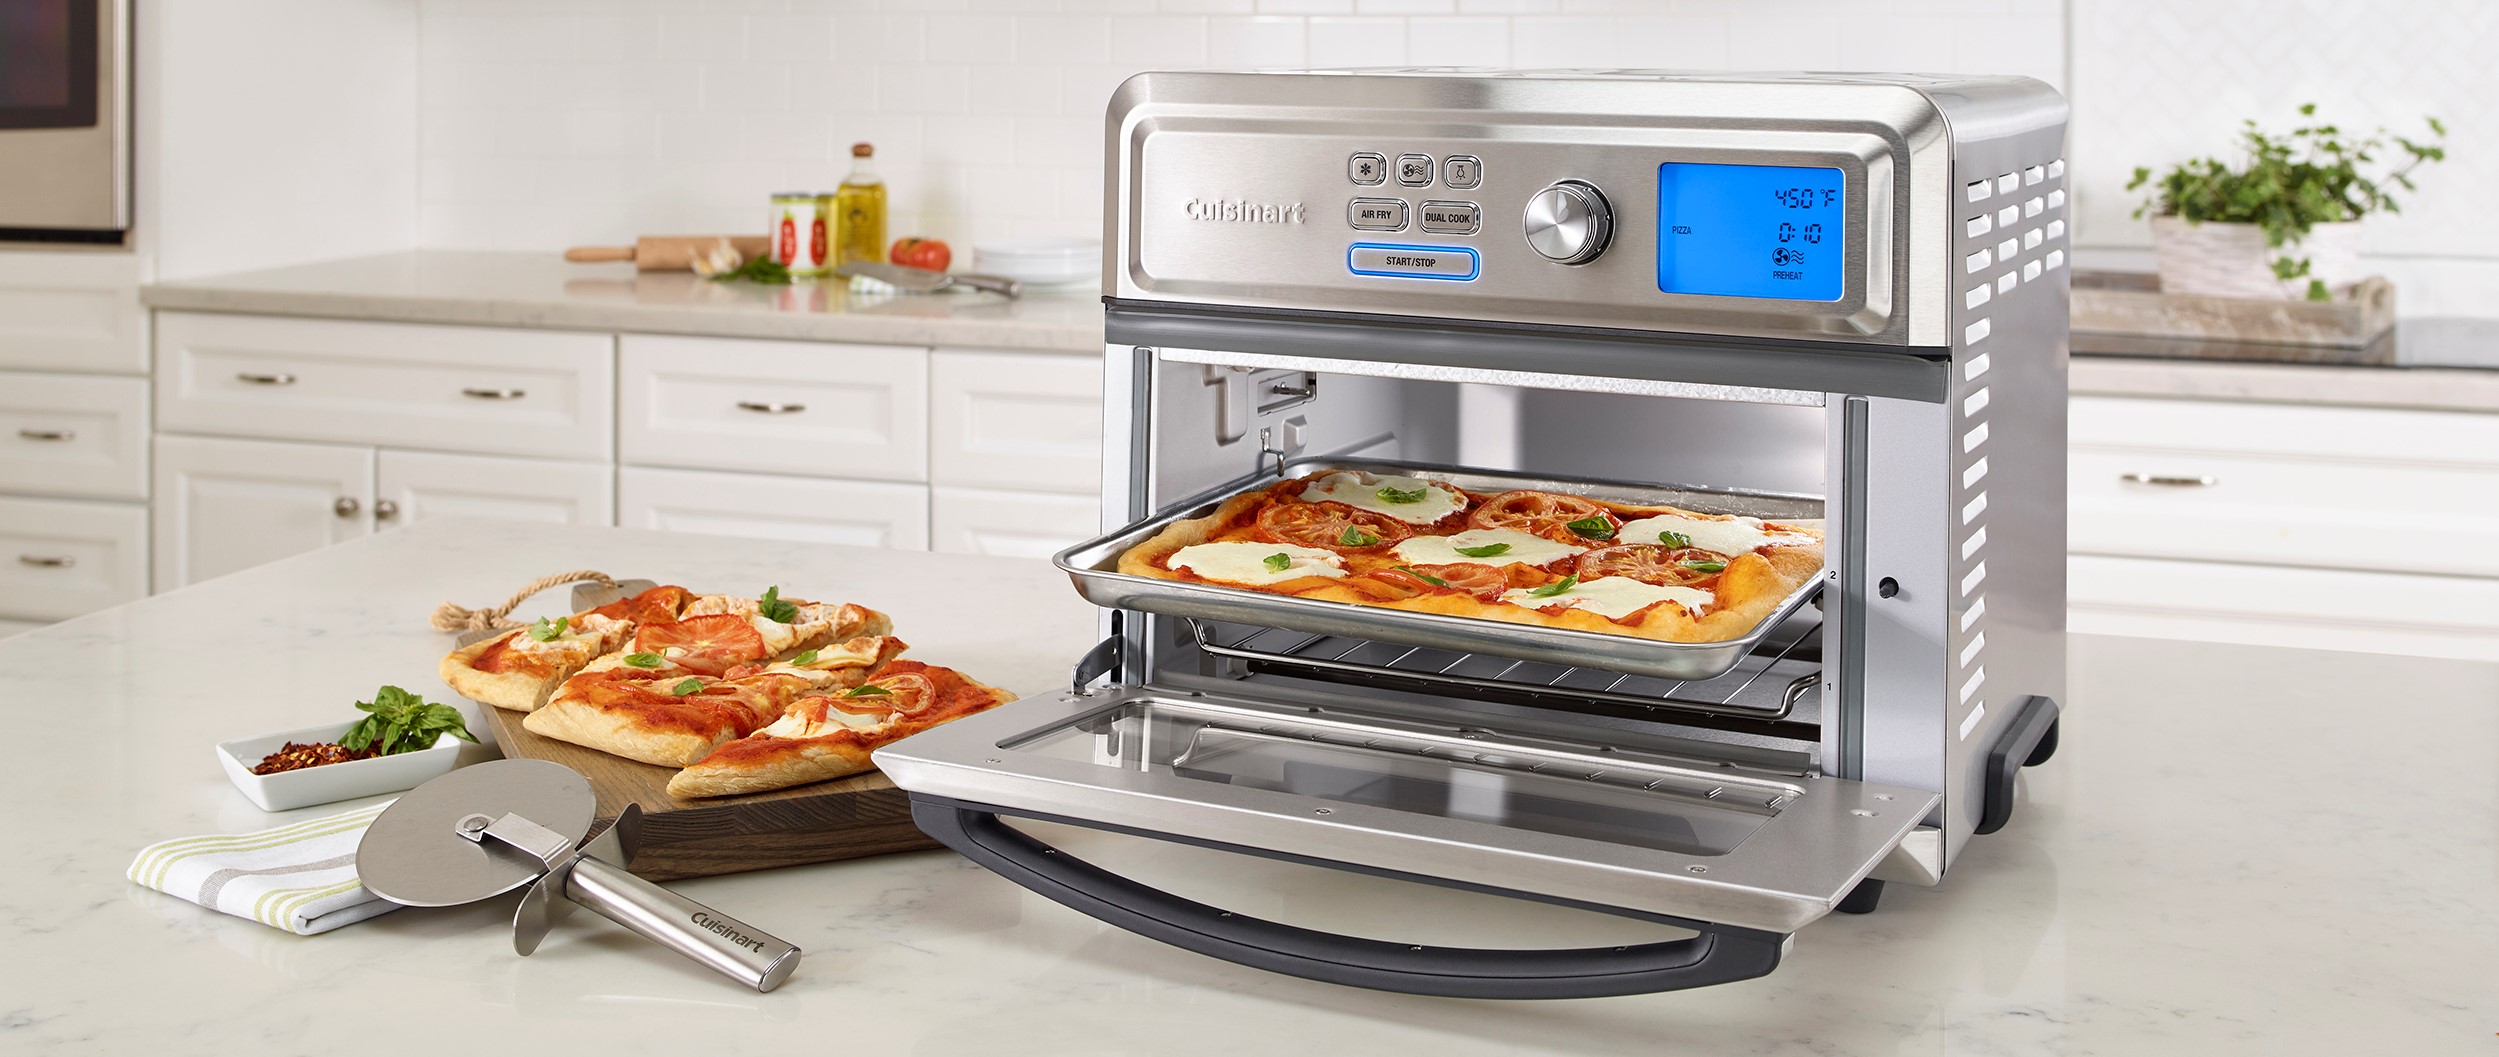 Voetganger uitvinden Verzoekschrift Air Fryer Toaster Ovens - Cuisinart.com